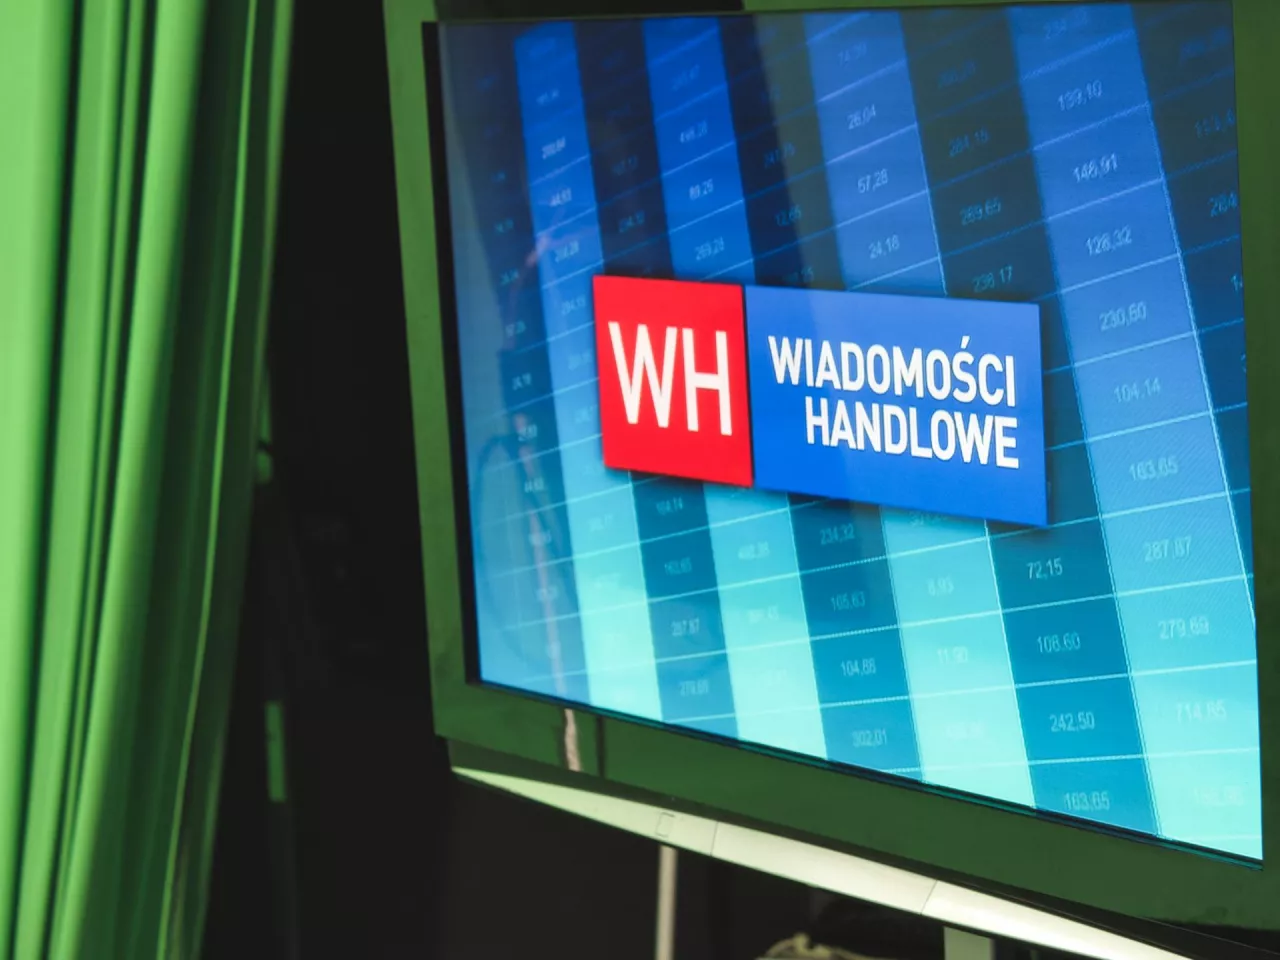 Wiadomości Handlowe - od teraz dostępne również w formie... telewizyjnej (fot. wiadomoscihandlowe.pl)